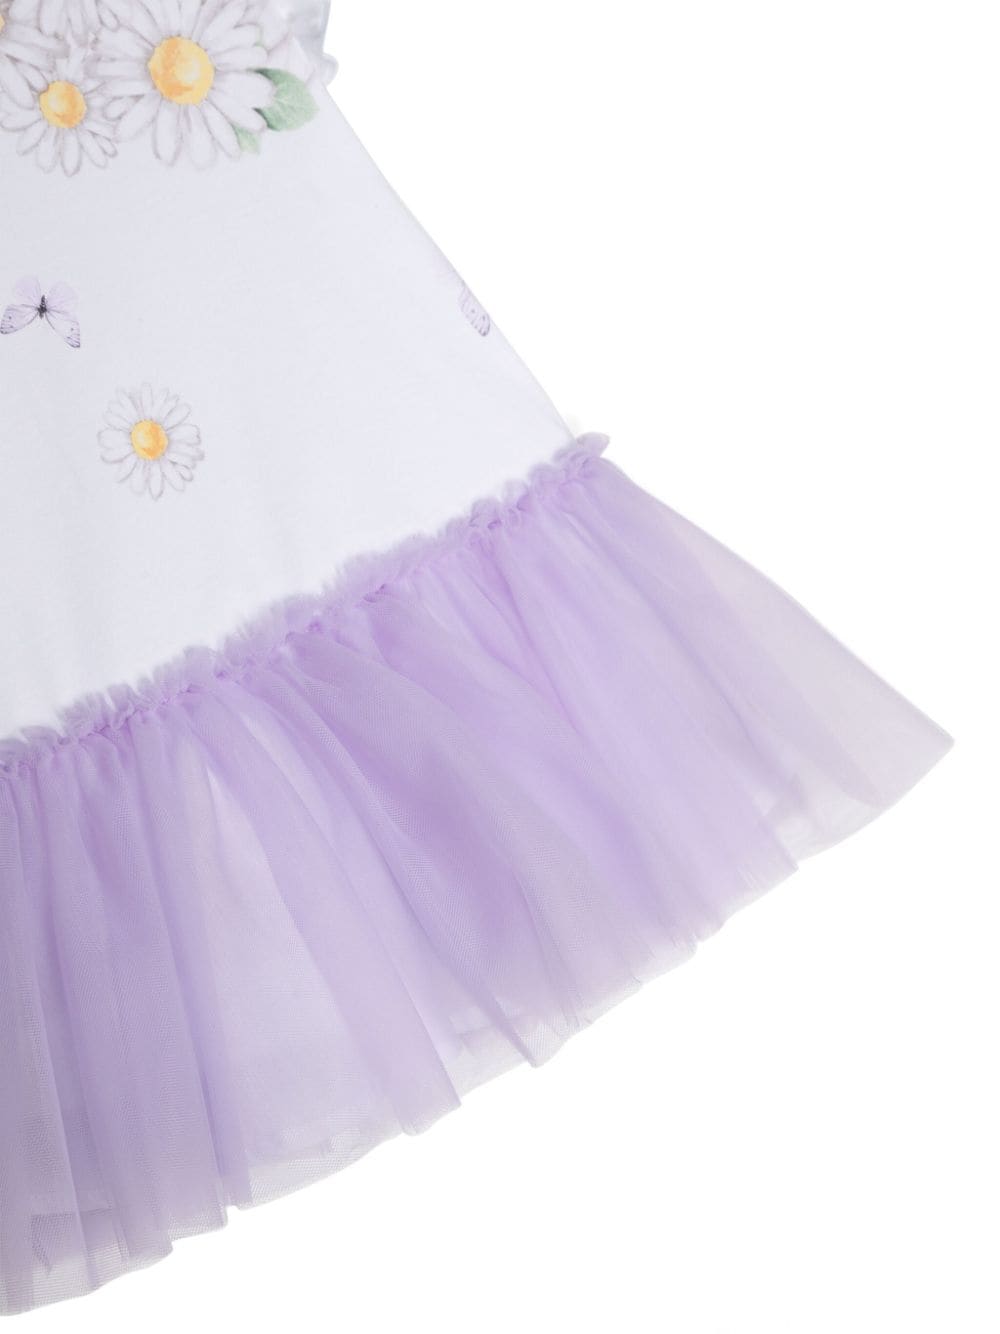 White and purple dress for newborn girls